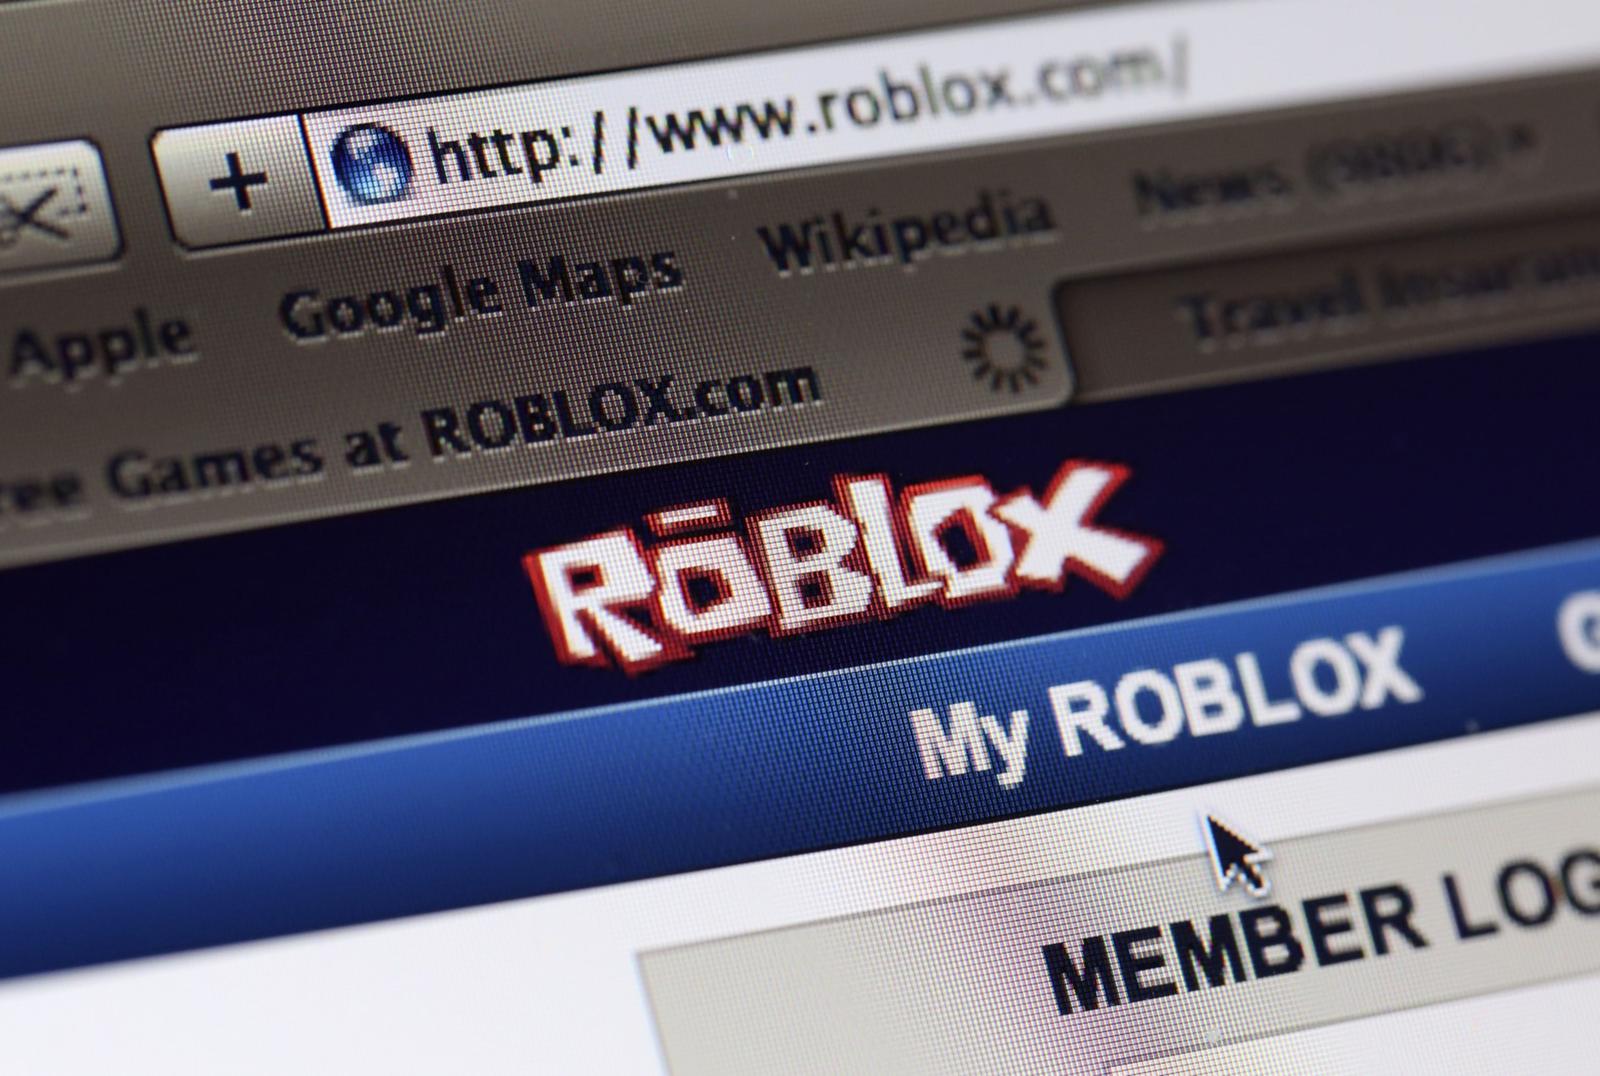 Roblox Planuje Wejscie Na Gielde Puls Biznesu Pb Pl - praca roblox